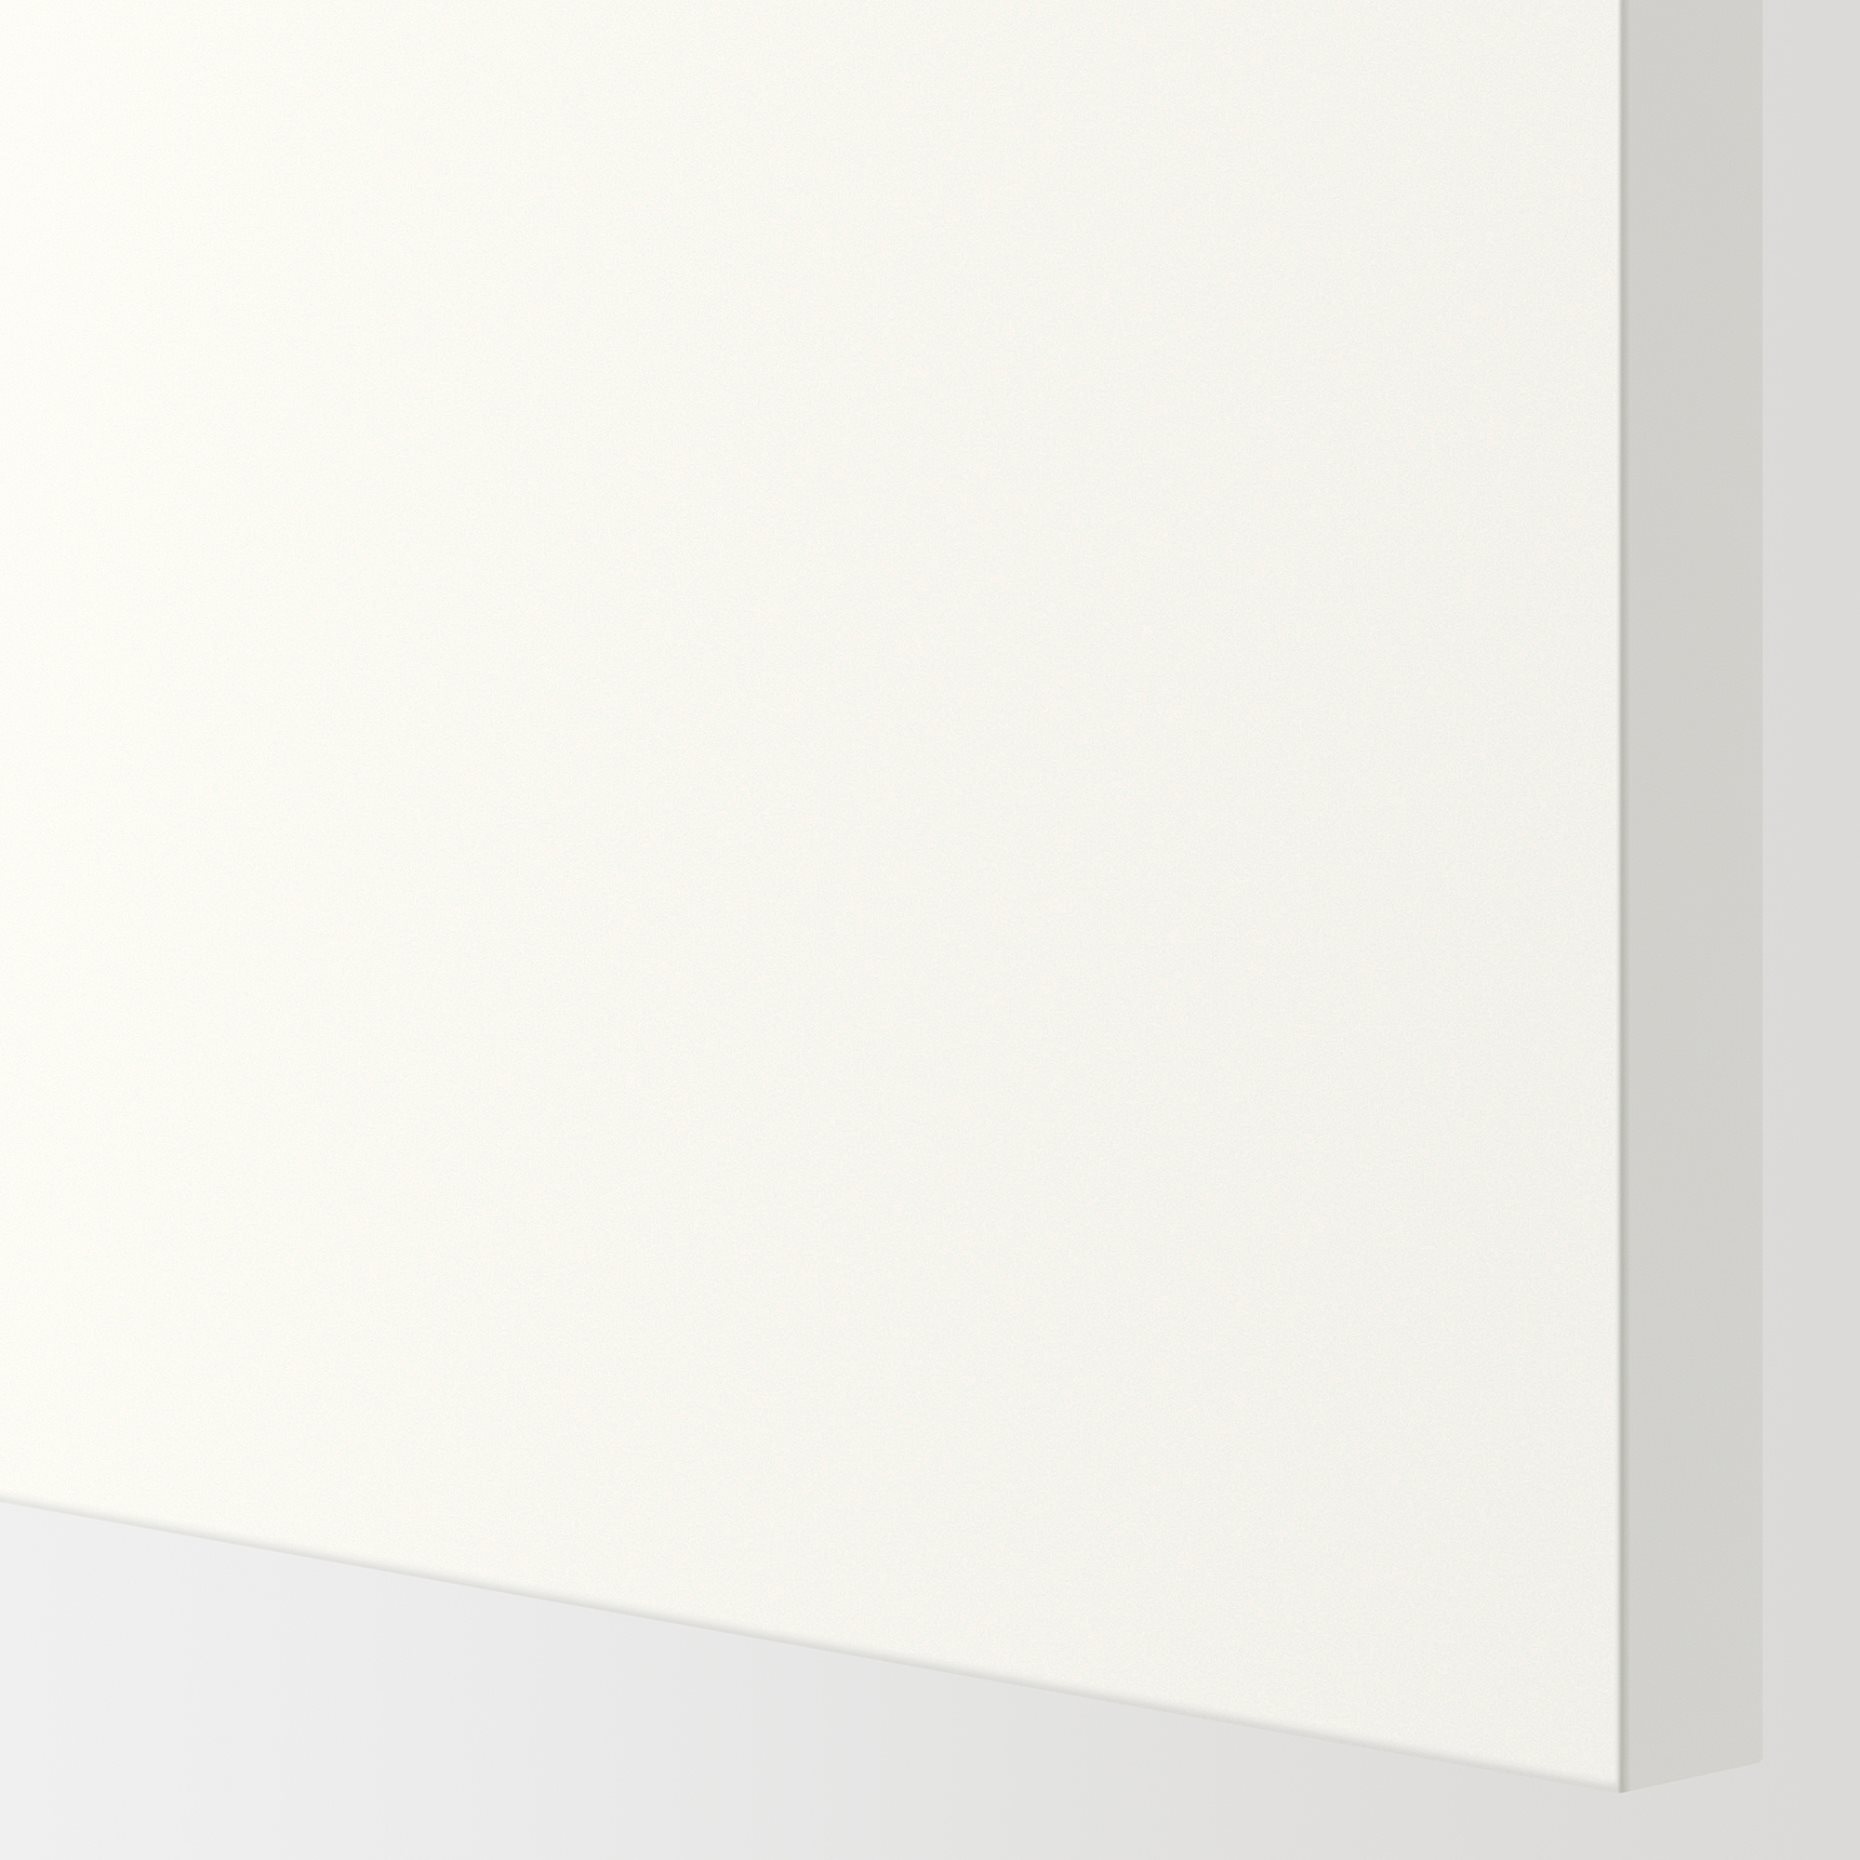 METOD, ψηλό ντουλάπι για ψυγείο ή καταψύκτη με 2 συρτάρια, 60x60x240 cm, 095.073.68